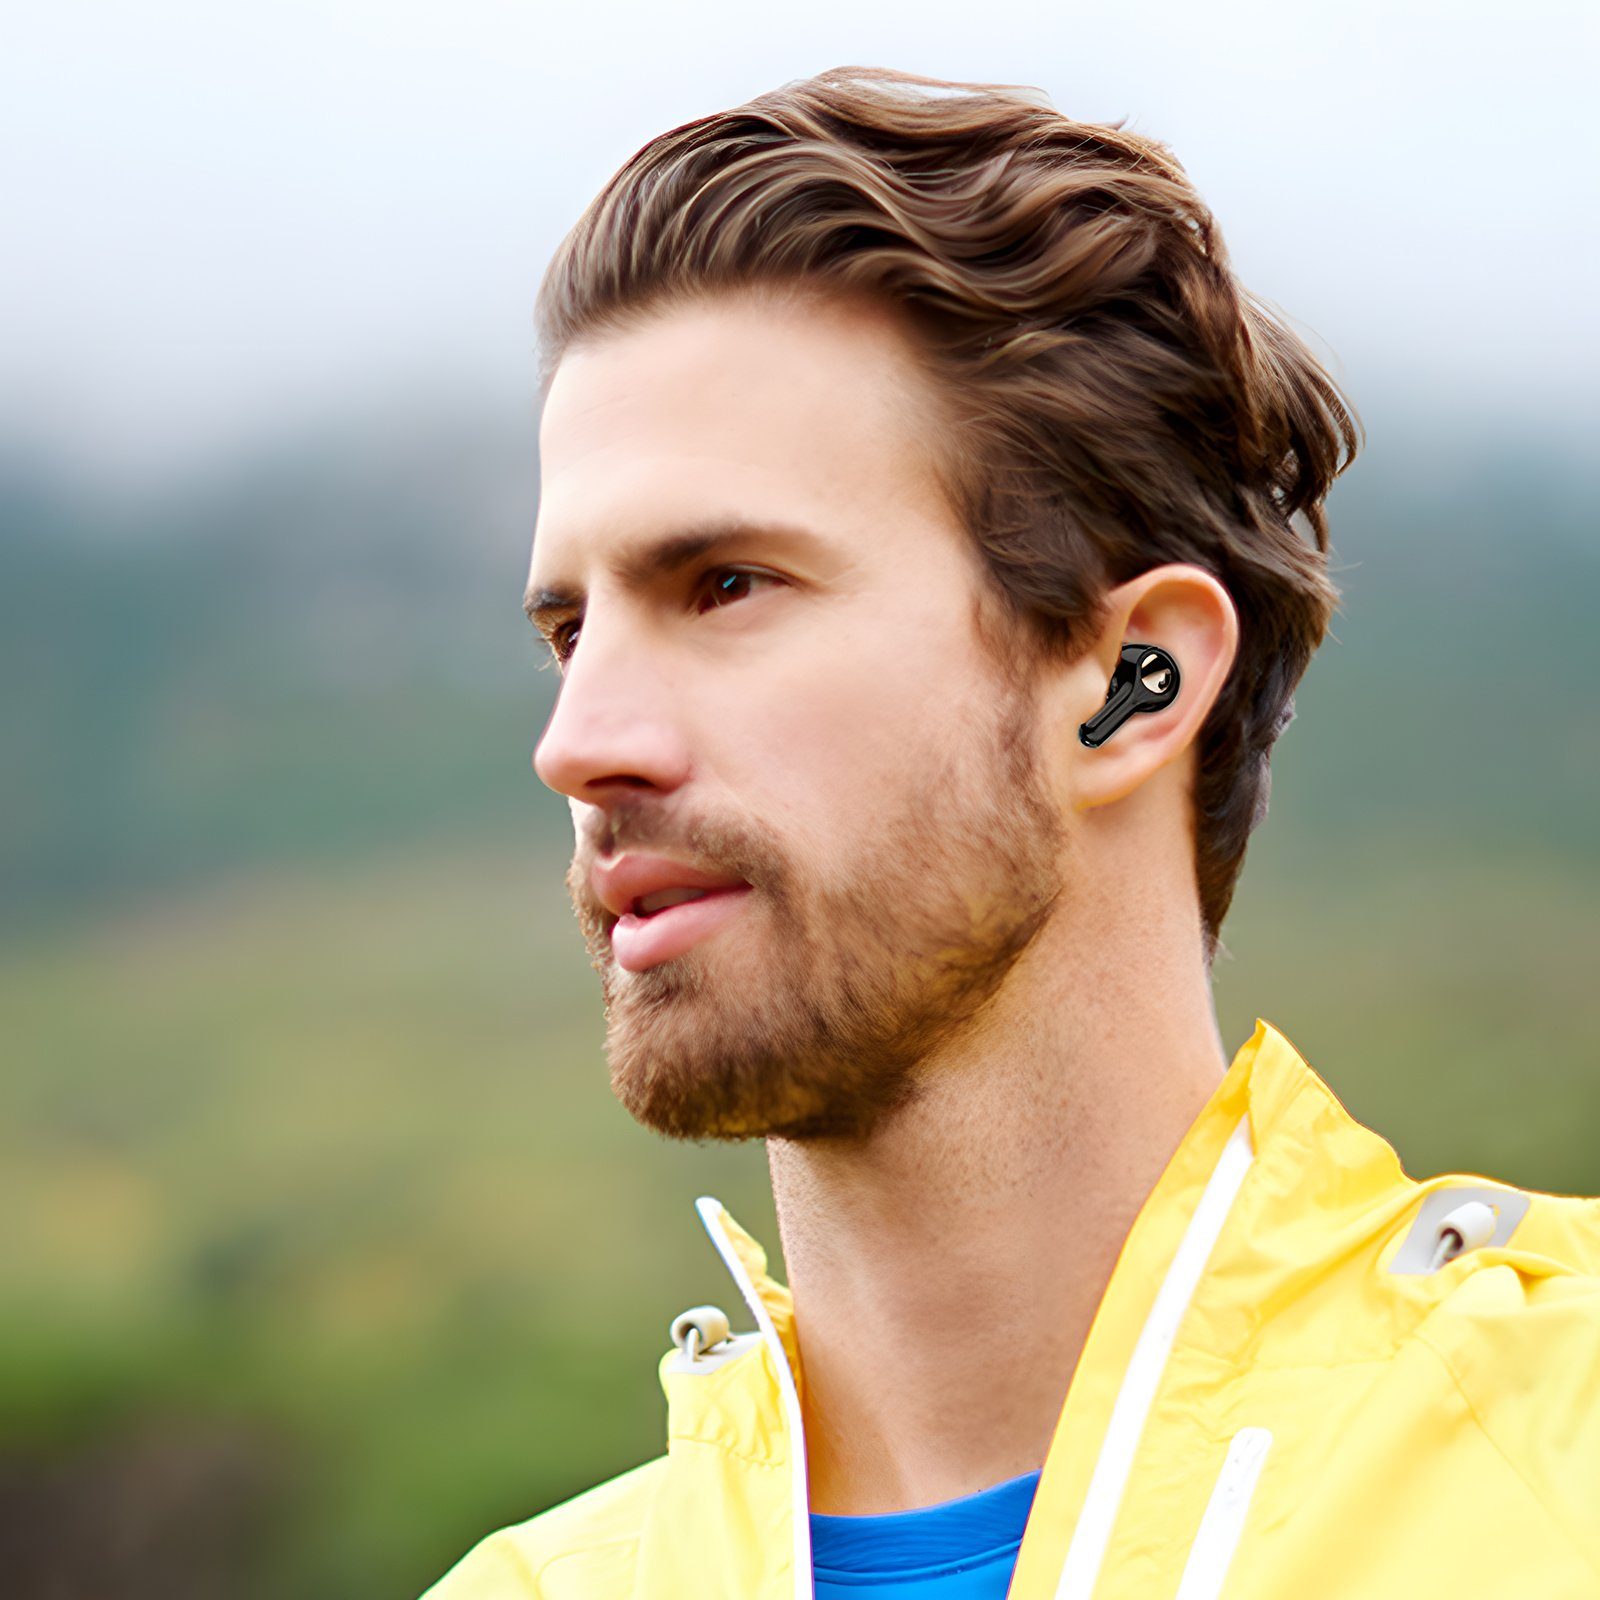 EXTSUD Bluetooth Kopfhörer Ladefach Schwarz Gerauschreduzierungsfunktion 30-Stunden Standby-Zeit, ANC Headset HIFI-Stereo, Musikspielzeit) LED-Anzeige, Stunden 5.2 Bluetooth In-Ear-Kopfhörer 7 (Sprachassistent, Rauschunterdrückungsfunktion, mit IPX5, Kabellos